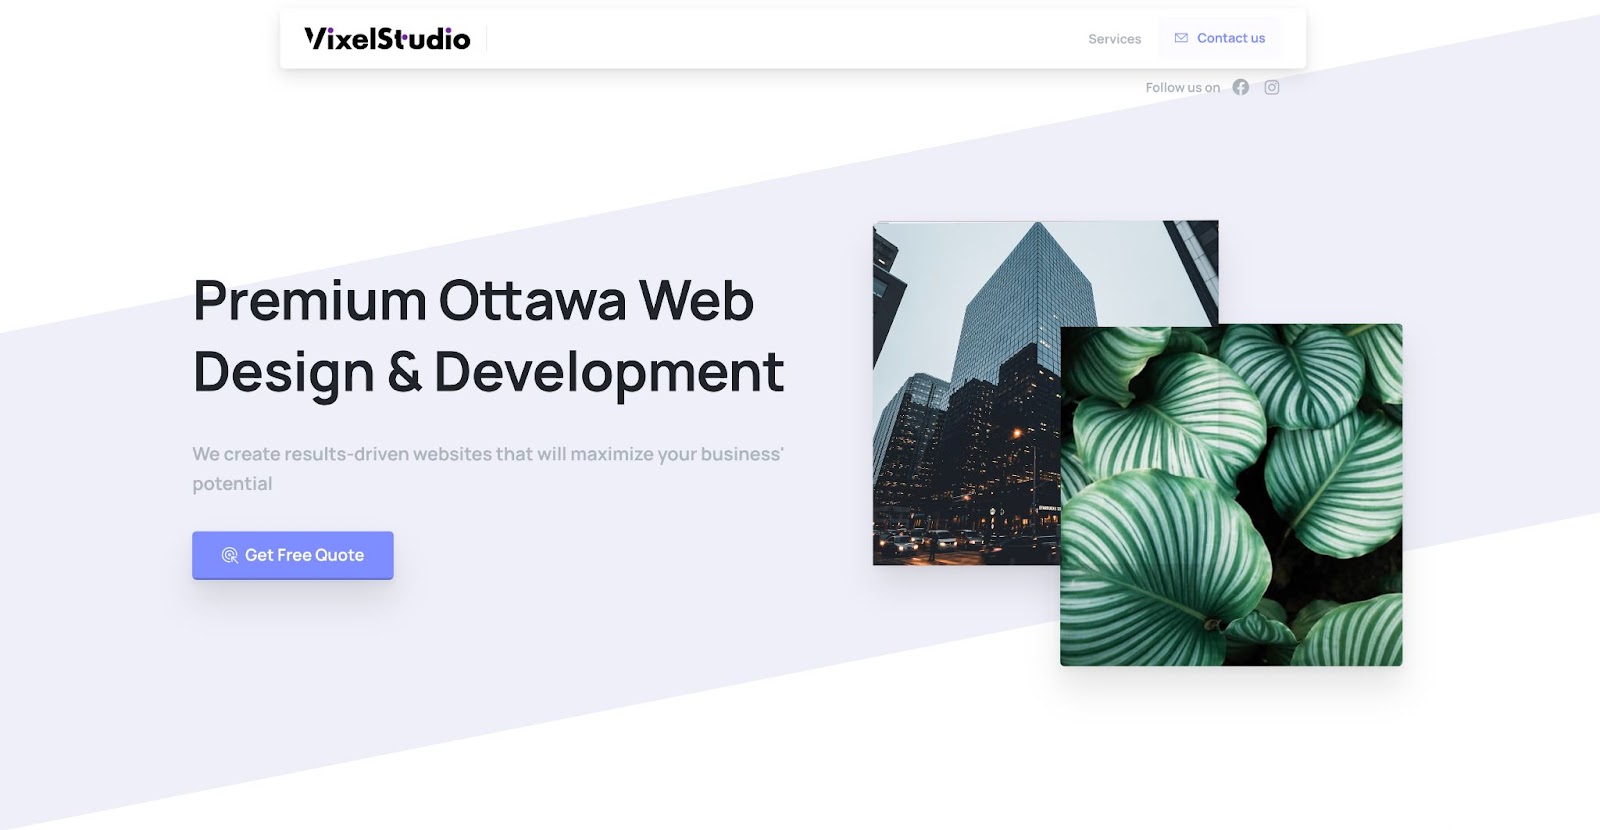 vixelstudio-com-ottawa-web-design-development